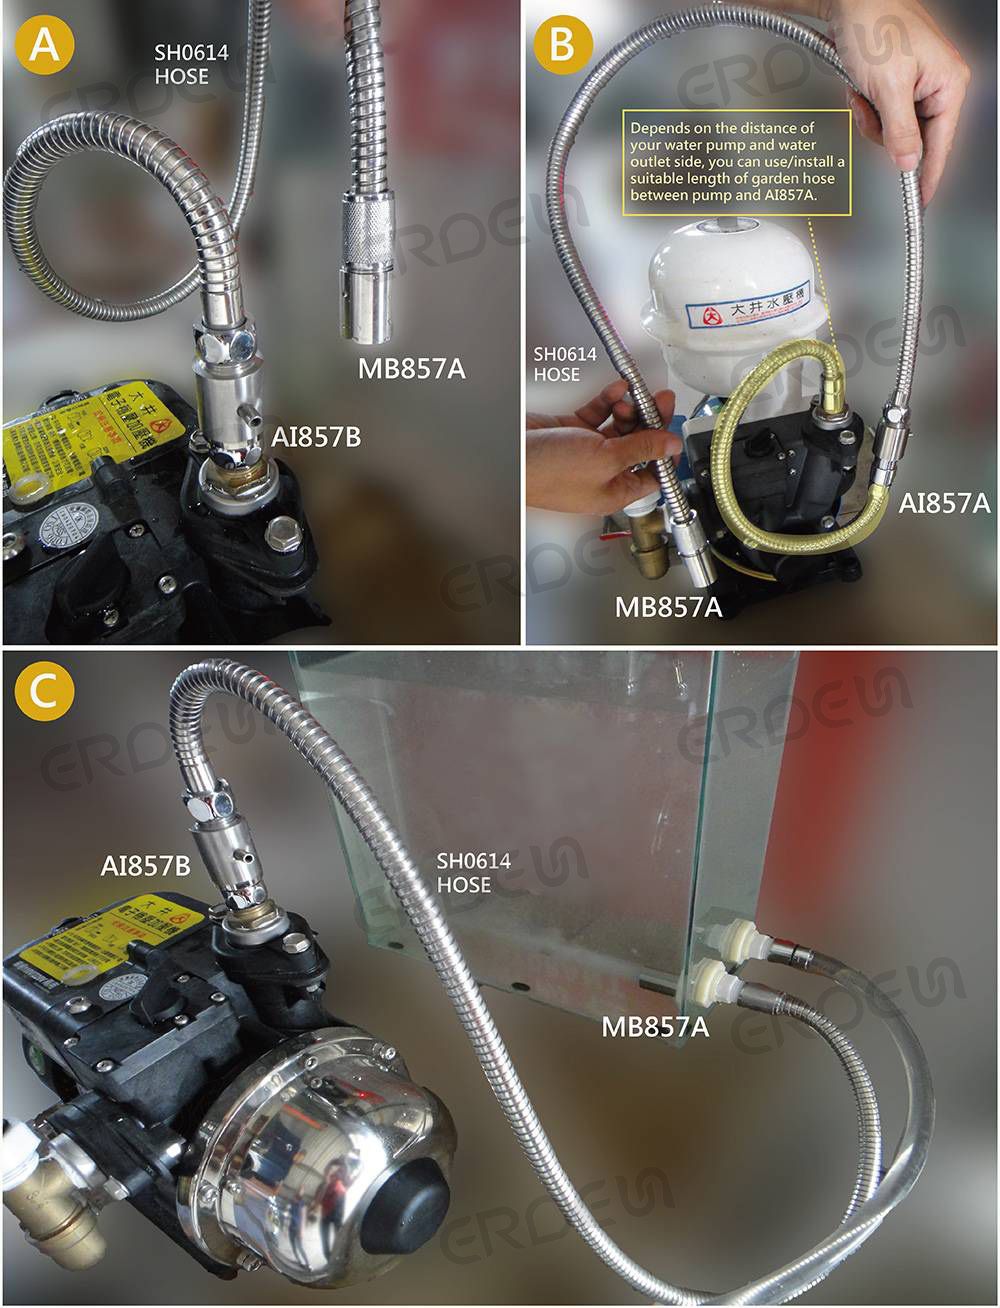 MB858A_Verbindung des Tiefenreinigungsgeräts für Mikroblasen